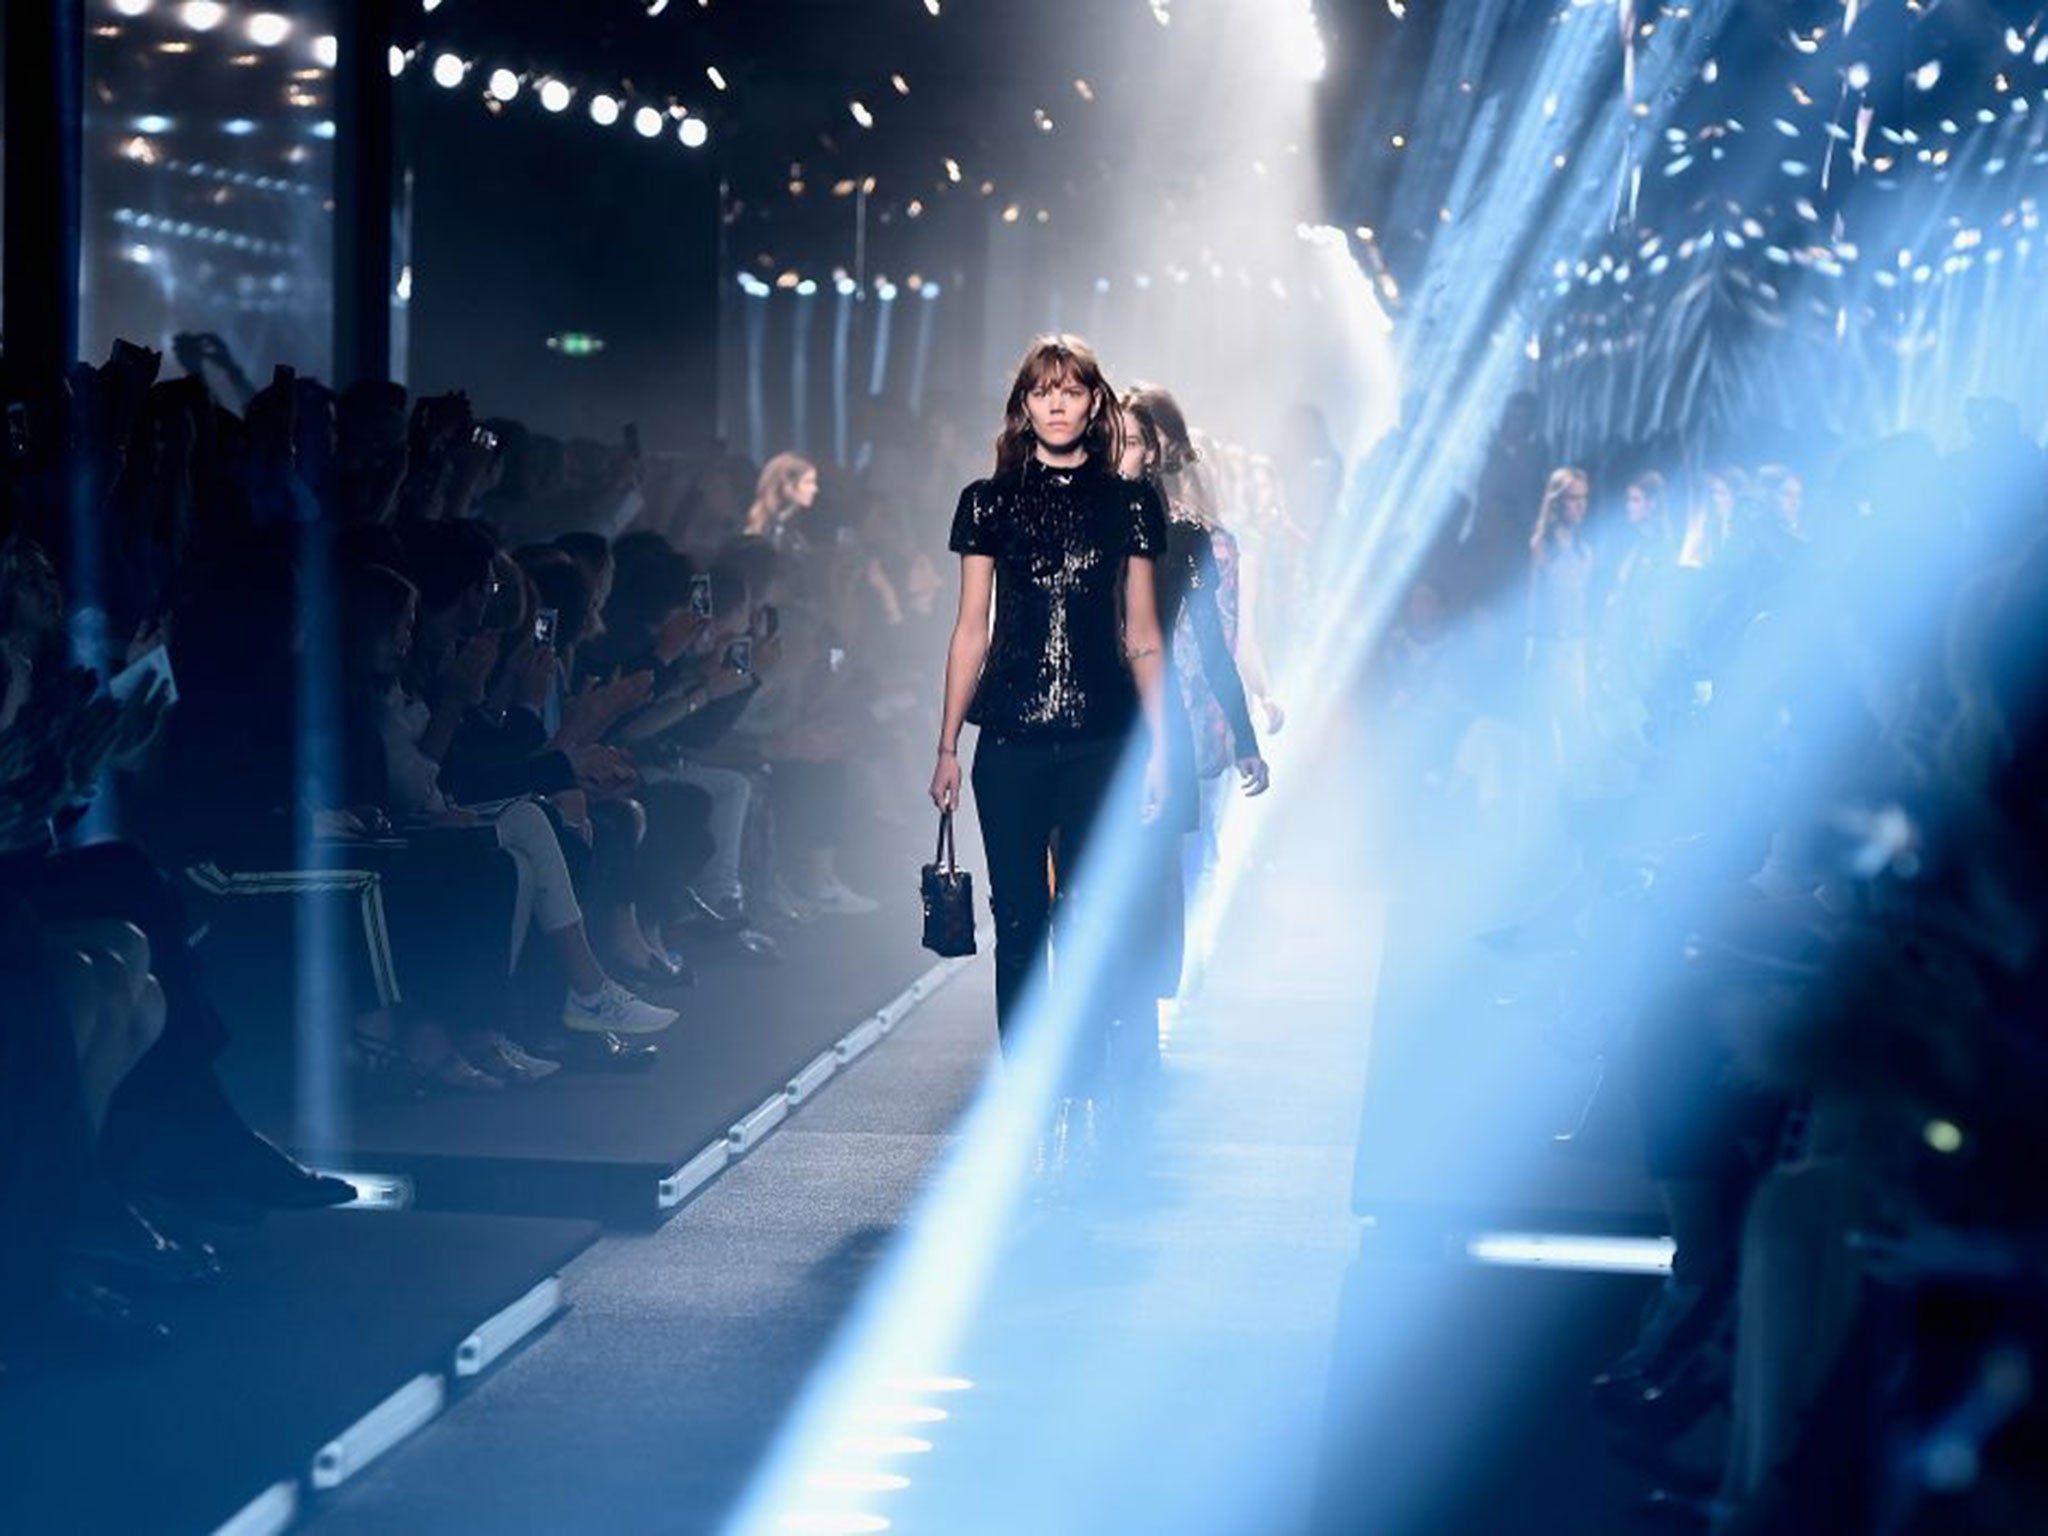 The spring/summer 2015 Louis Vuitton show for Paris Fashion Week